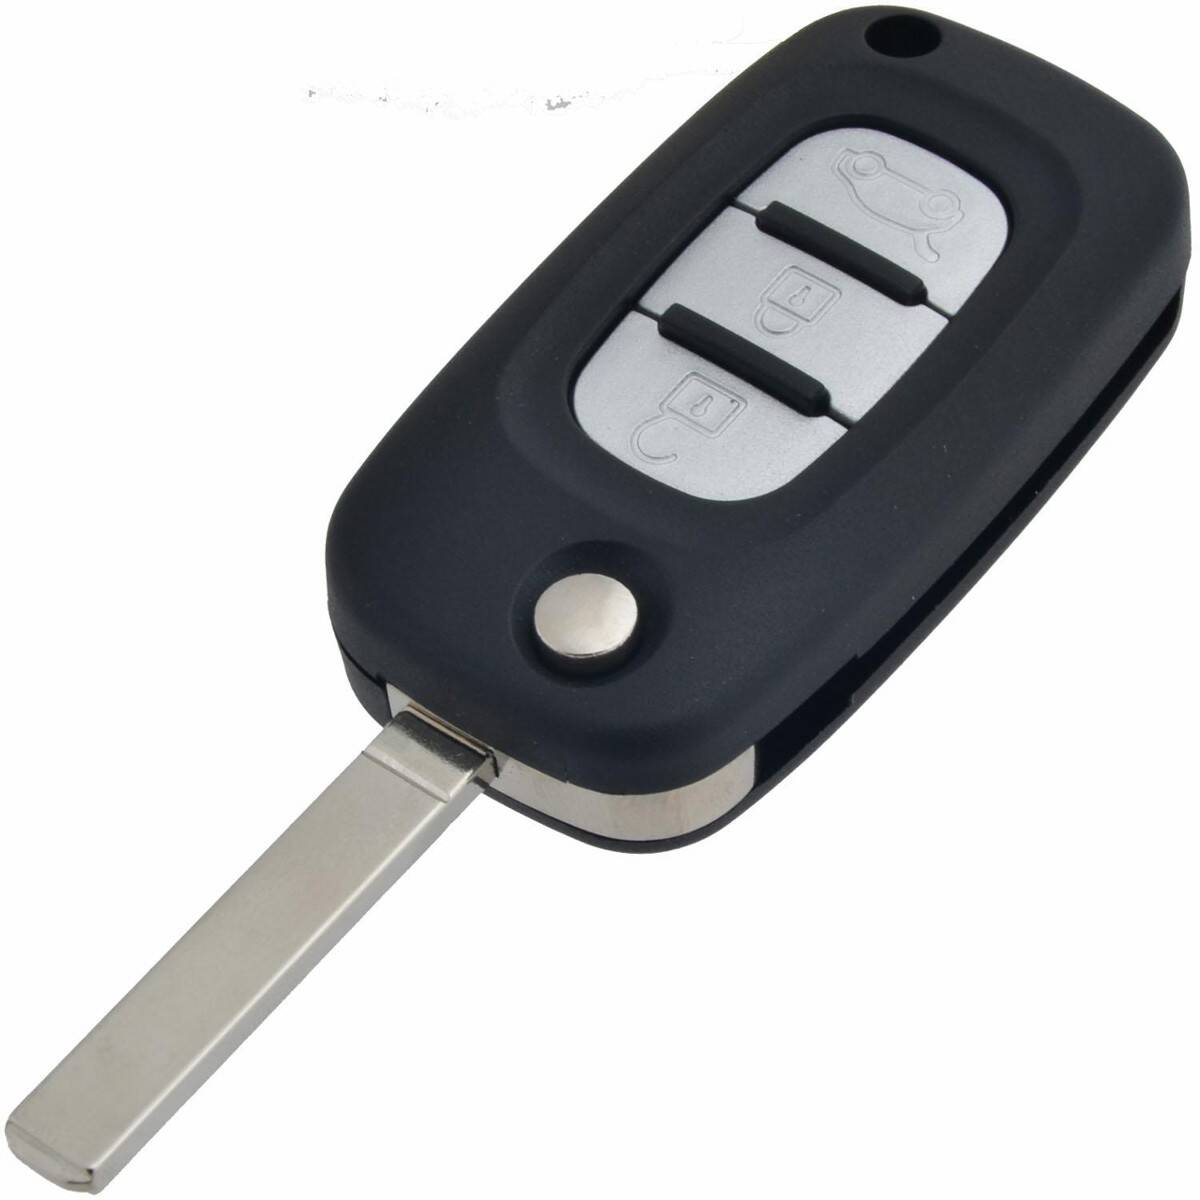 Autoschlüssel für Ford 433 MHz mit 3 Tasten - Mr Key